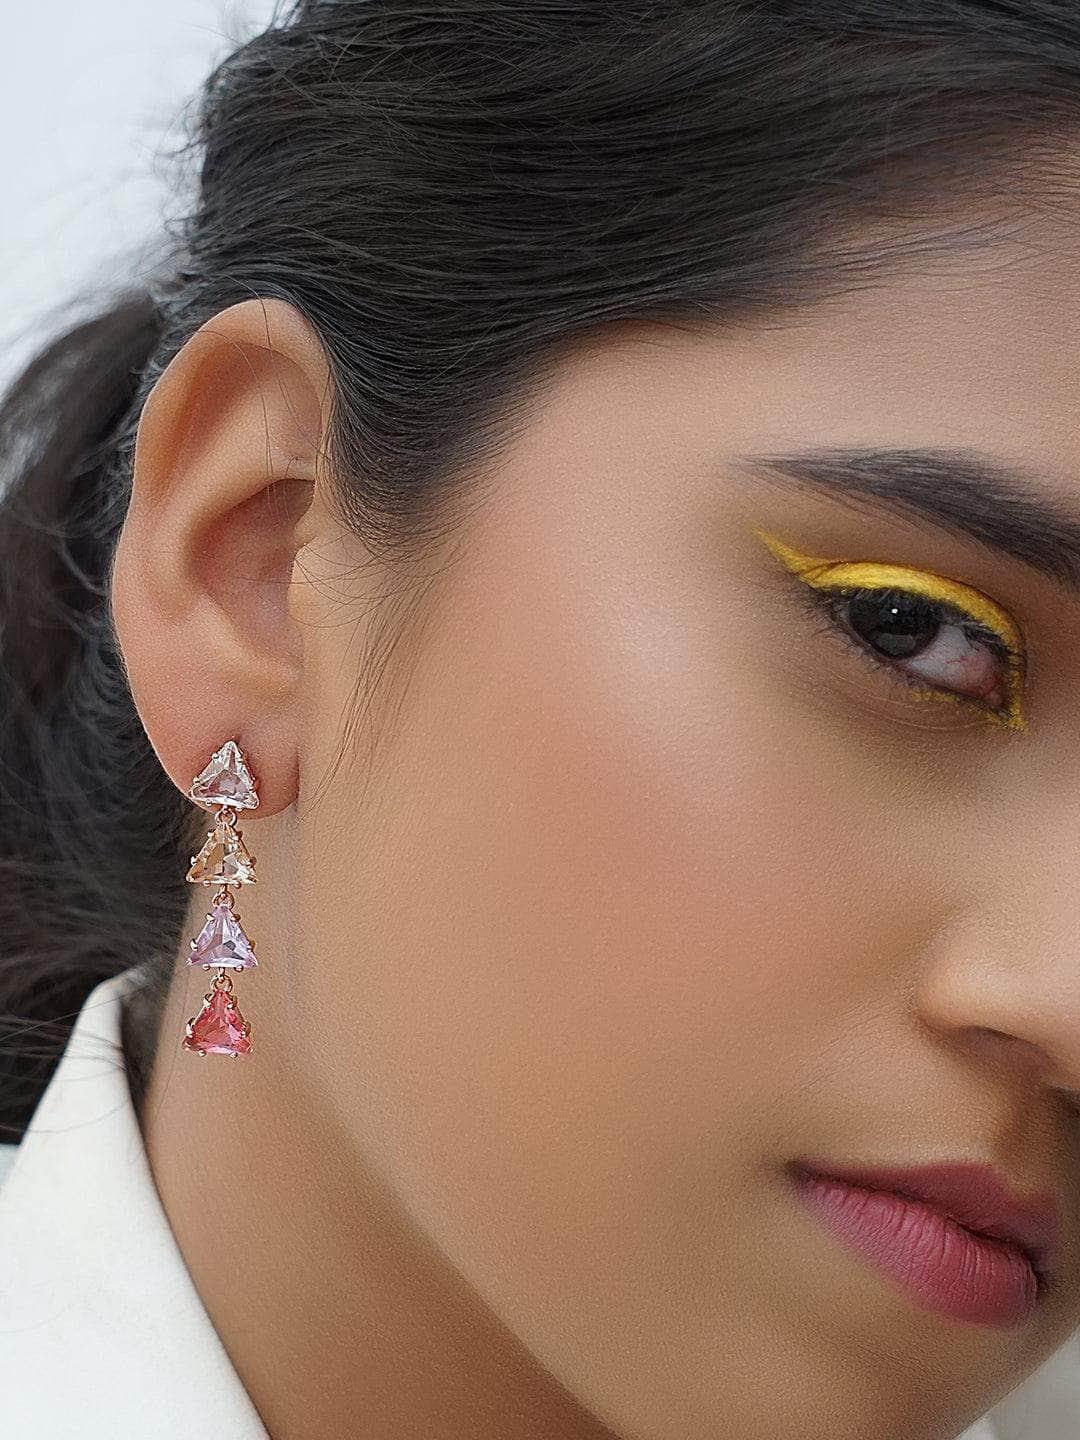 Ishhaara Akriti Kakar In Triangle 4 Tiered Pastel Earrings Pink